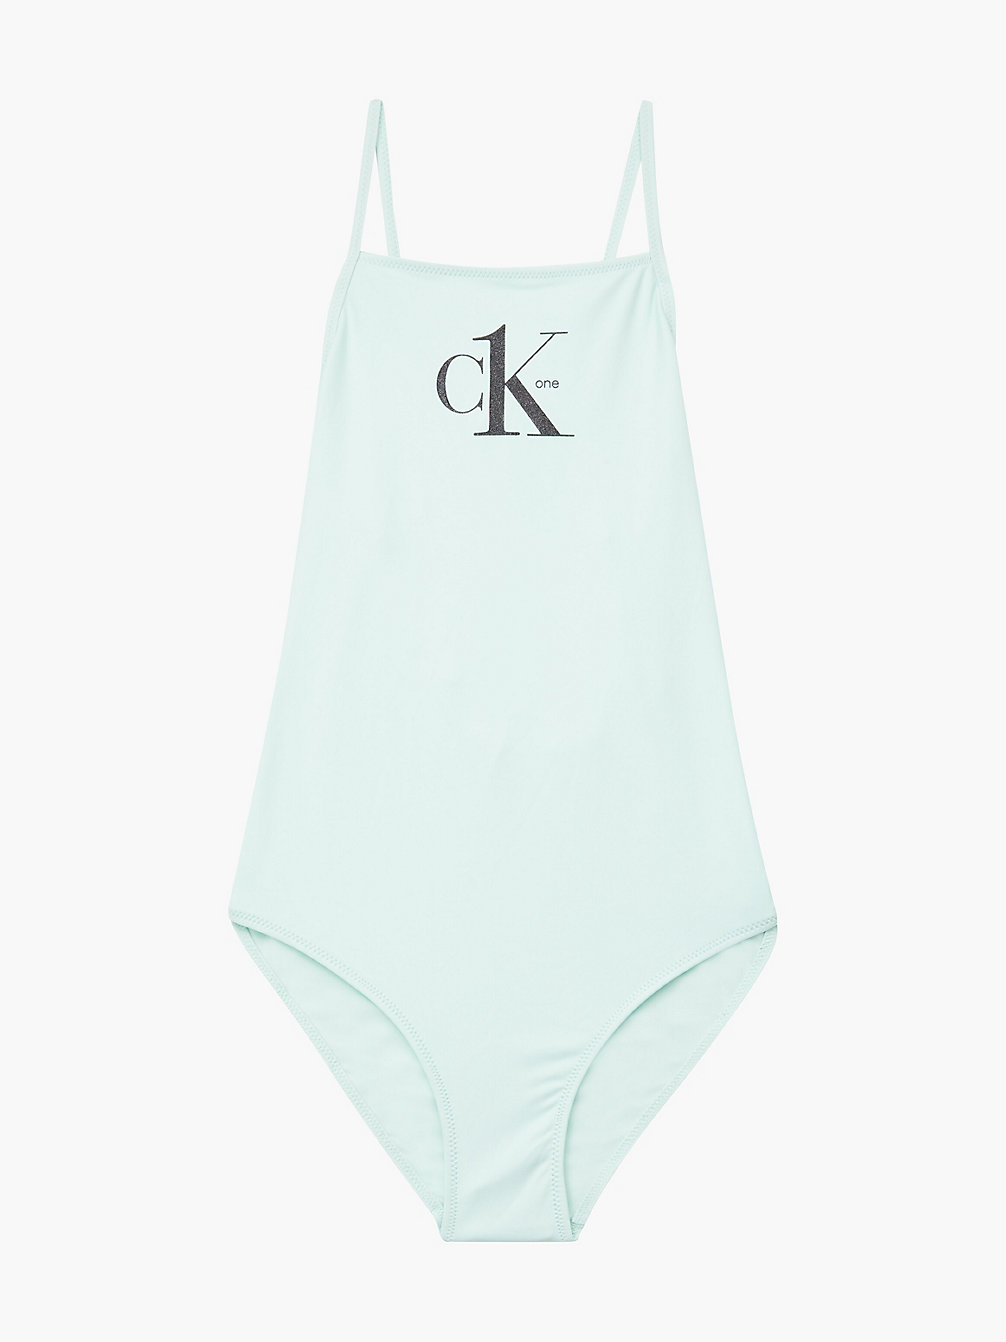 CLEAR SEAFOAM Badeanzug Für Mädchen - Y2ck One undefined Maedchen Calvin Klein